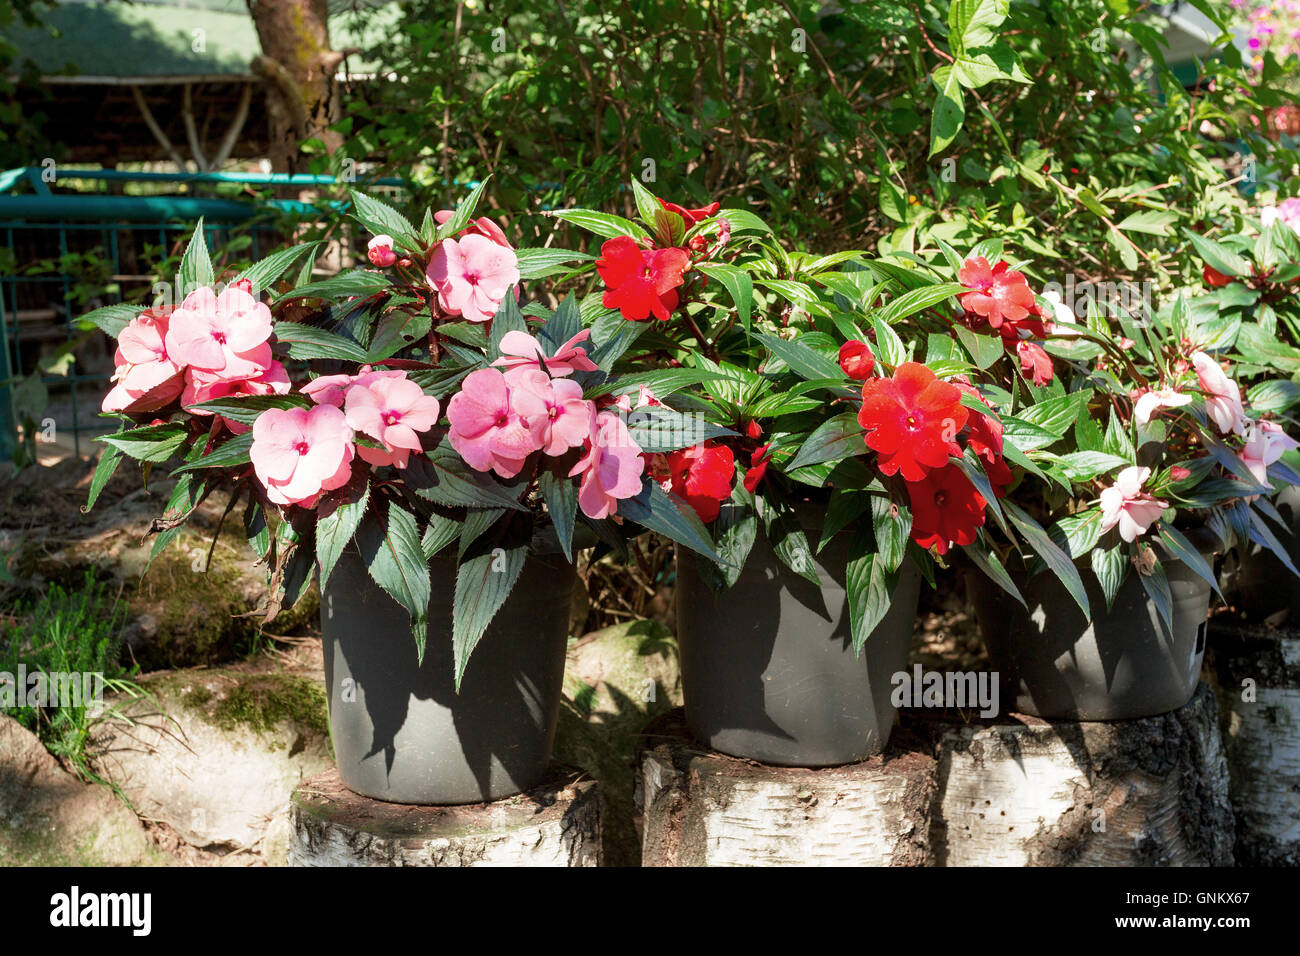 Rosso e rosa Nuova Guinea impatiens fiori in vaso sul pezzo di betulla nel giardino estivo, sole di mattina con shaddows Foto Stock